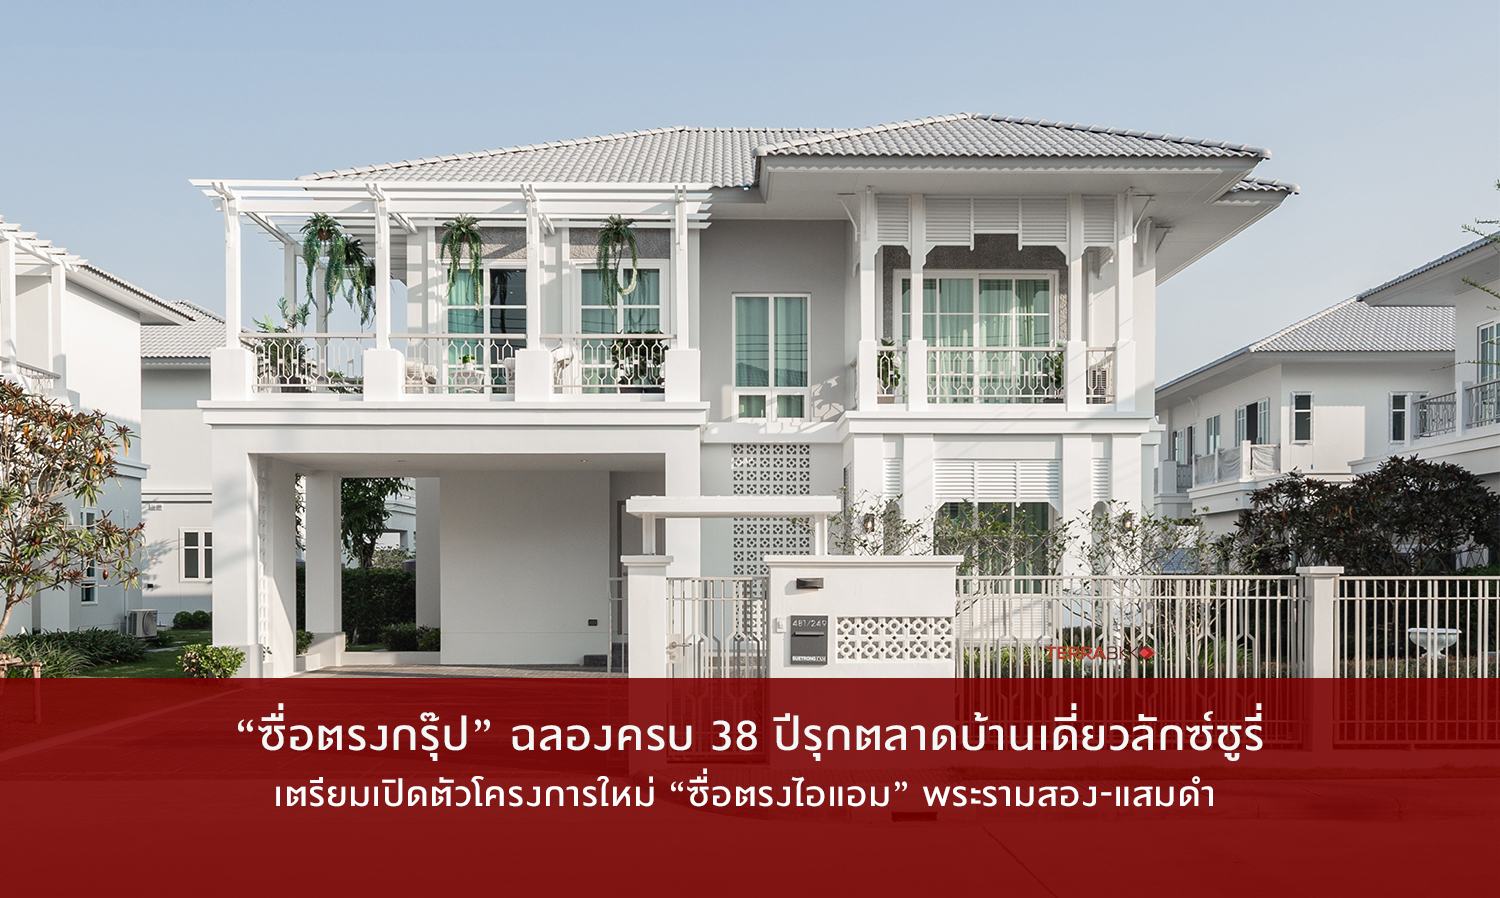 ซื่อตรงกรุ๊ป ฉลองครบ 38 ปีรุกตลาดบ้านเดี่ยวลักซ์ชูรี่ จับมือพานาโซนิค ชูจุดขายบ้านอากาศบริสุทธิ์เป็นครั้งแรกในไทย เตรียมเปิดตัวโครงการใหม่ “ซื่อตรงไอแอม” พระรามสอง-แสมดํา 